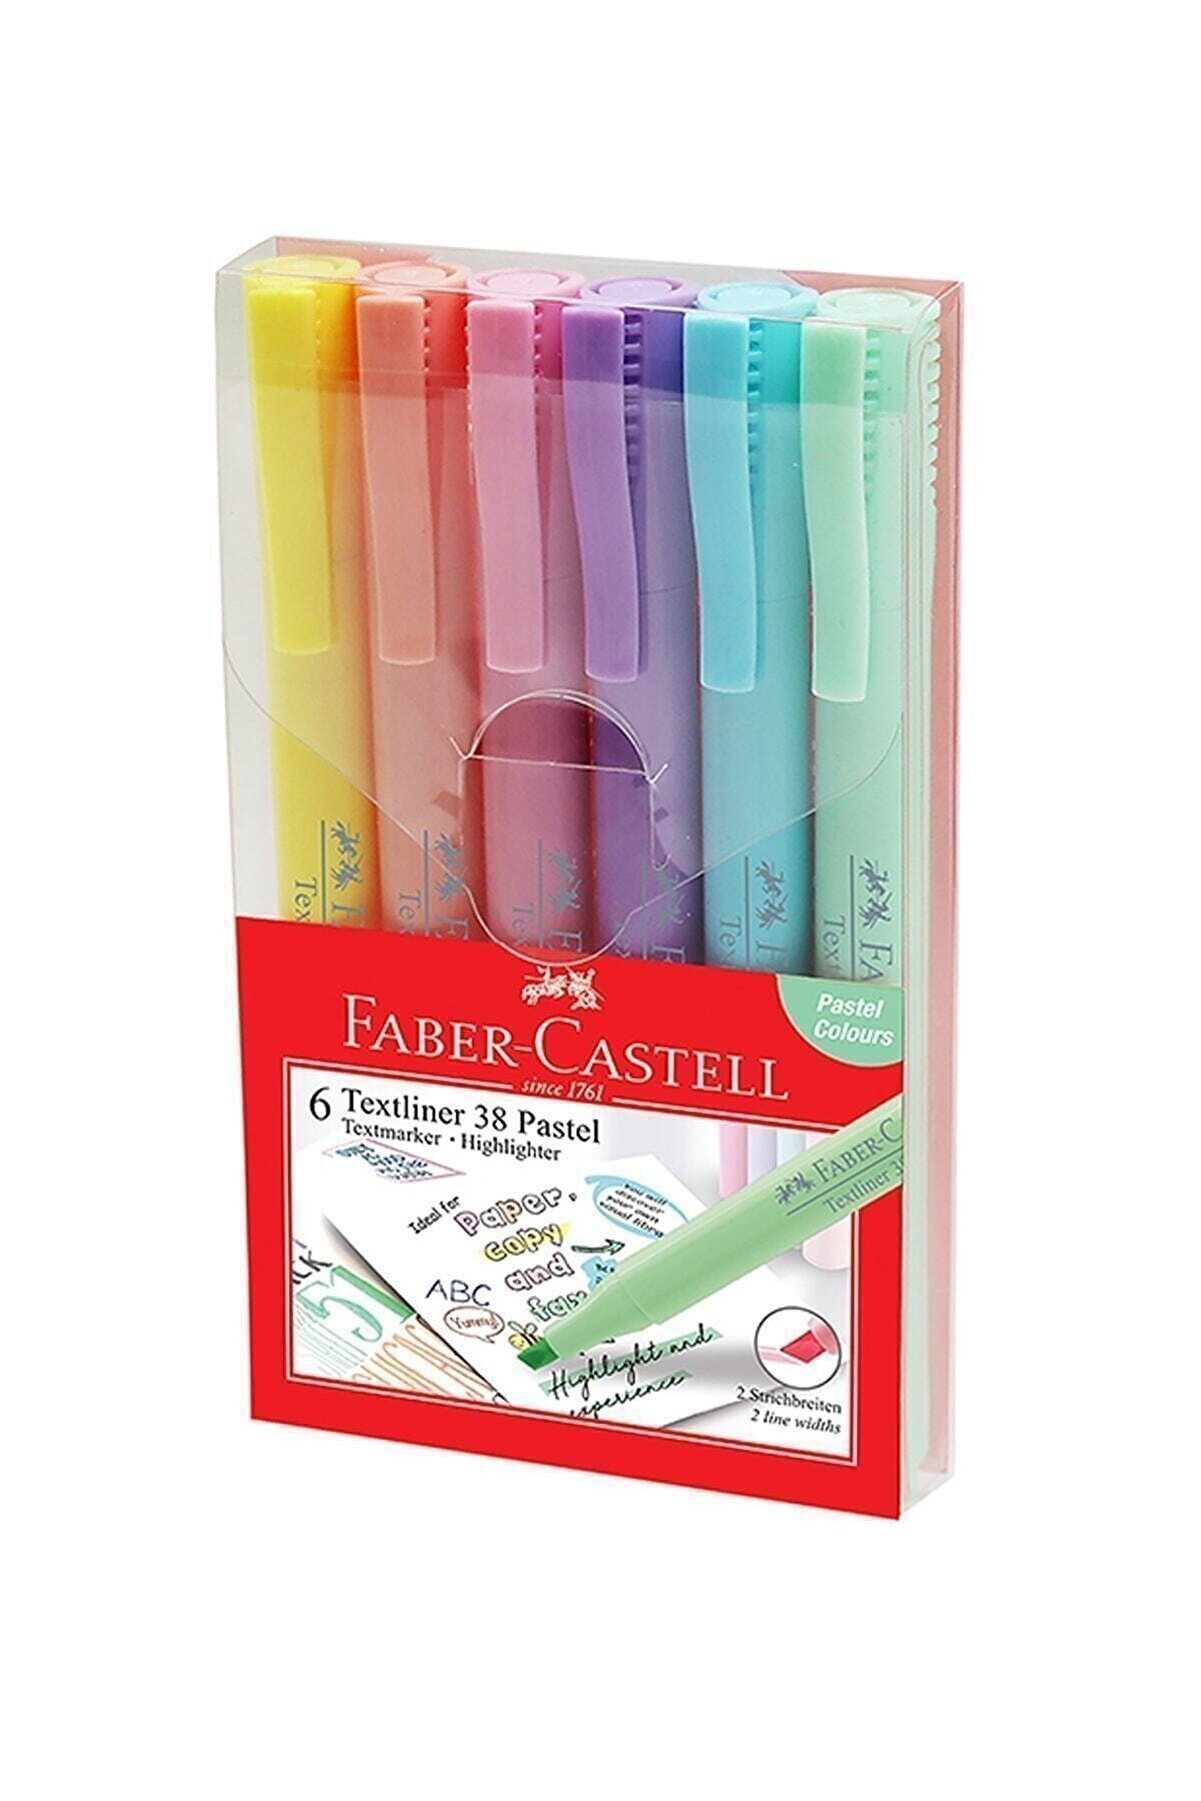 Faber Castell Textliner 38 Pastel 6'lı Set